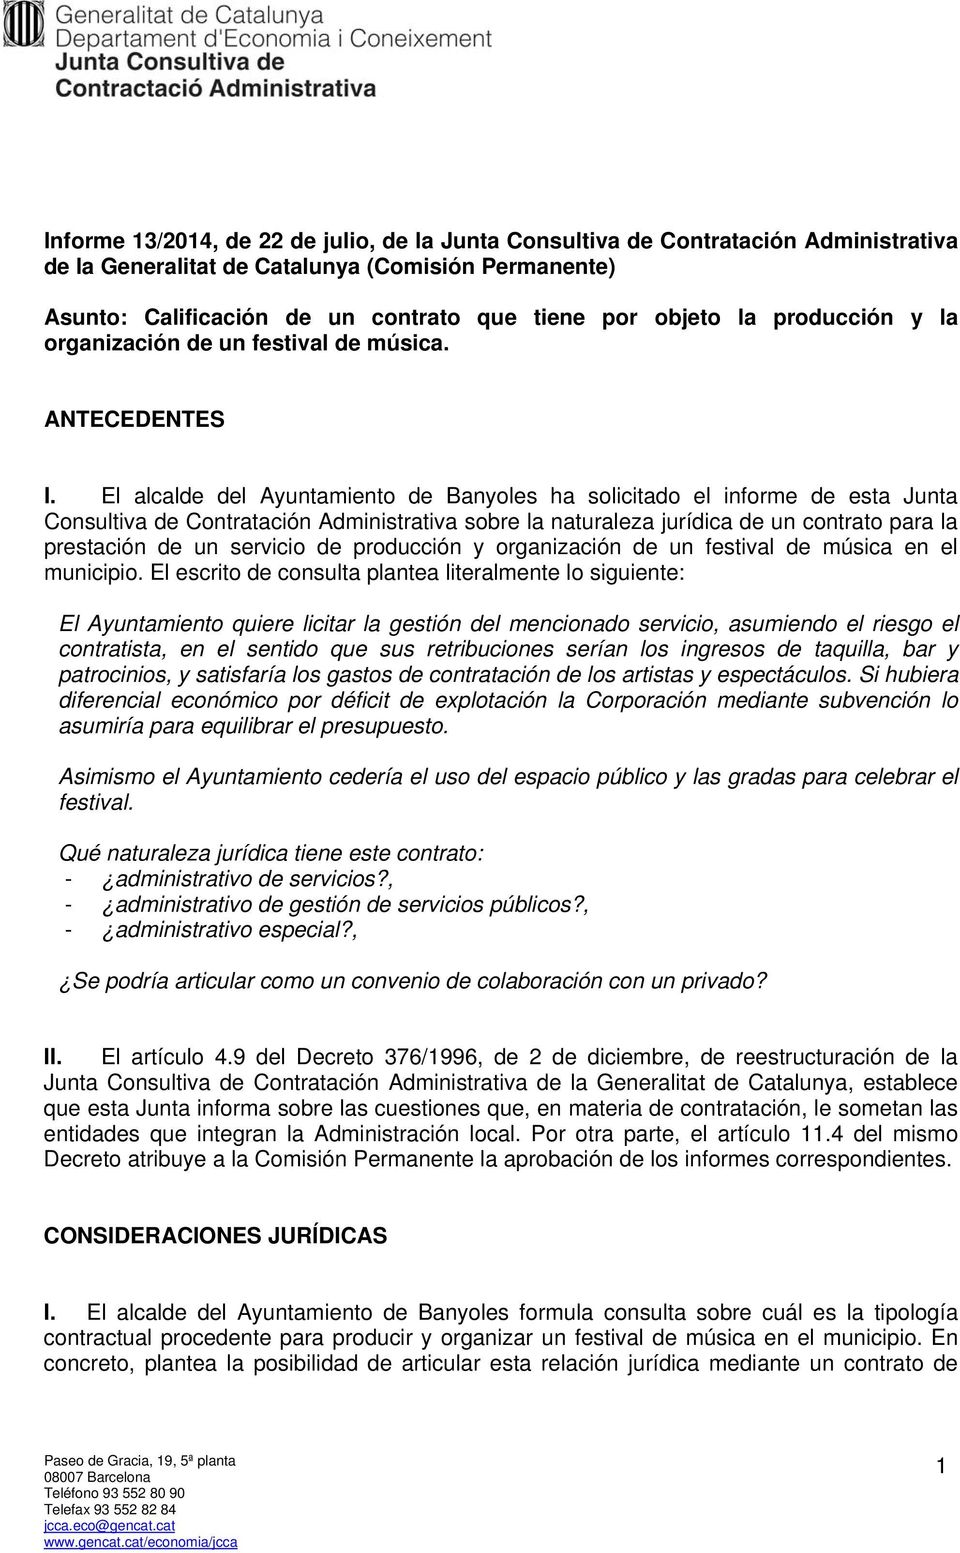 El alcalde del Ayuntamiento de Banyoles ha solicitado el informe de esta Junta Consultiva de Contratación Administrativa sobre la naturaleza jurídica de un contrato para la prestación de un servicio